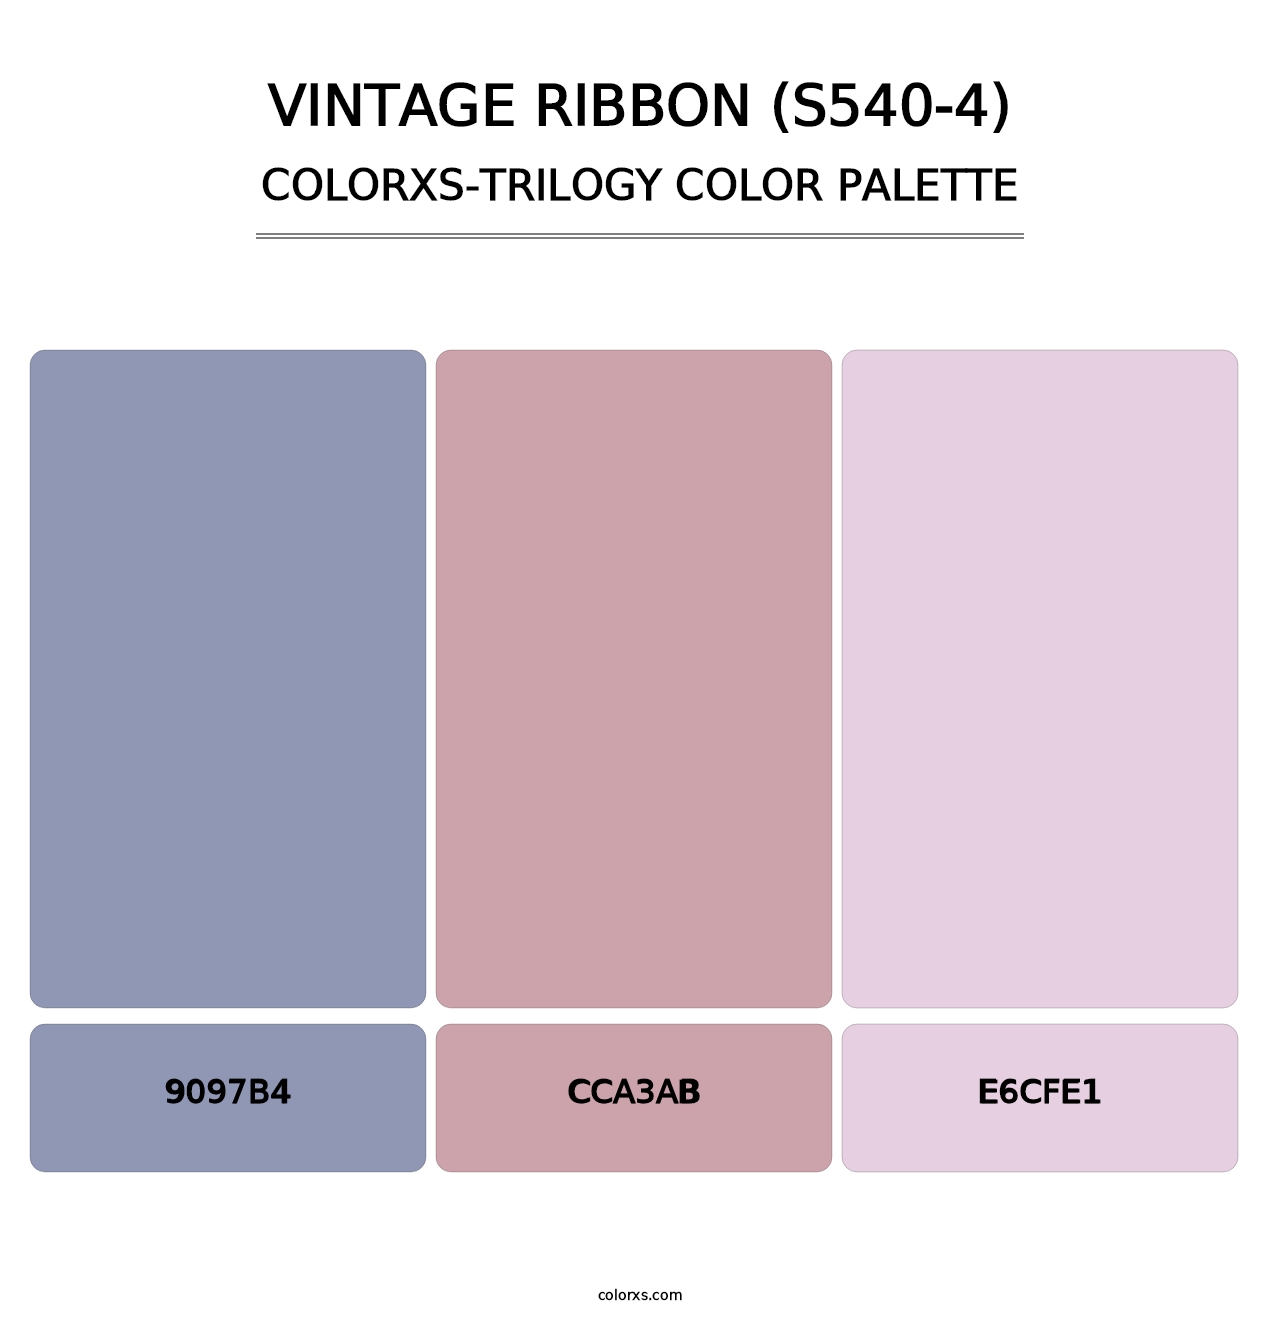 Vintage Ribbon (S540-4) - Colorxs Trilogy Palette